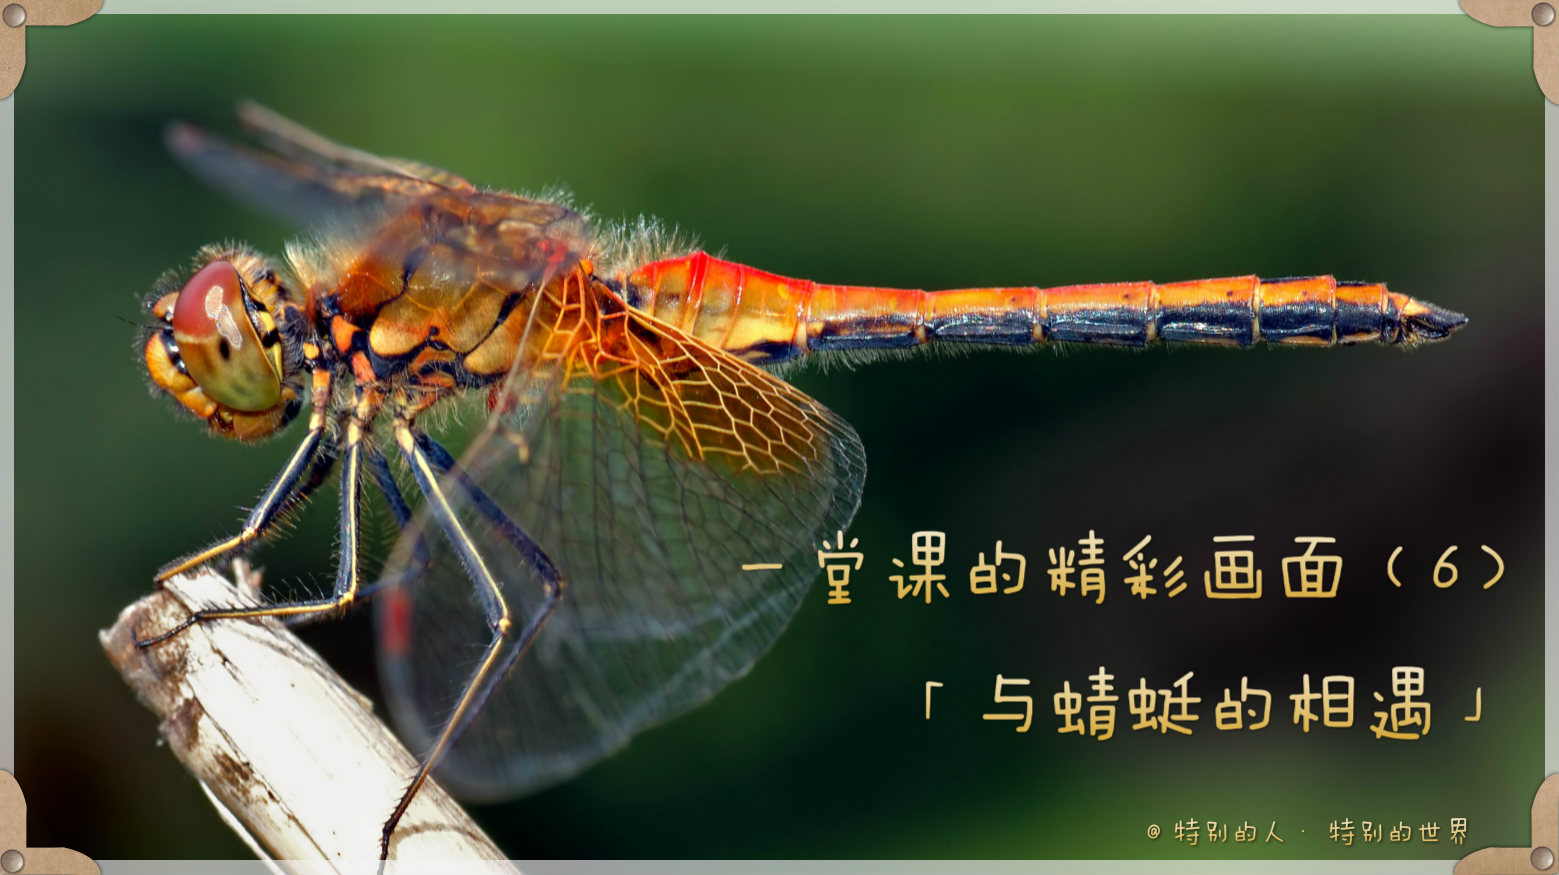 一堂课的精彩画面（6）—— 与蜻蜓的相遇